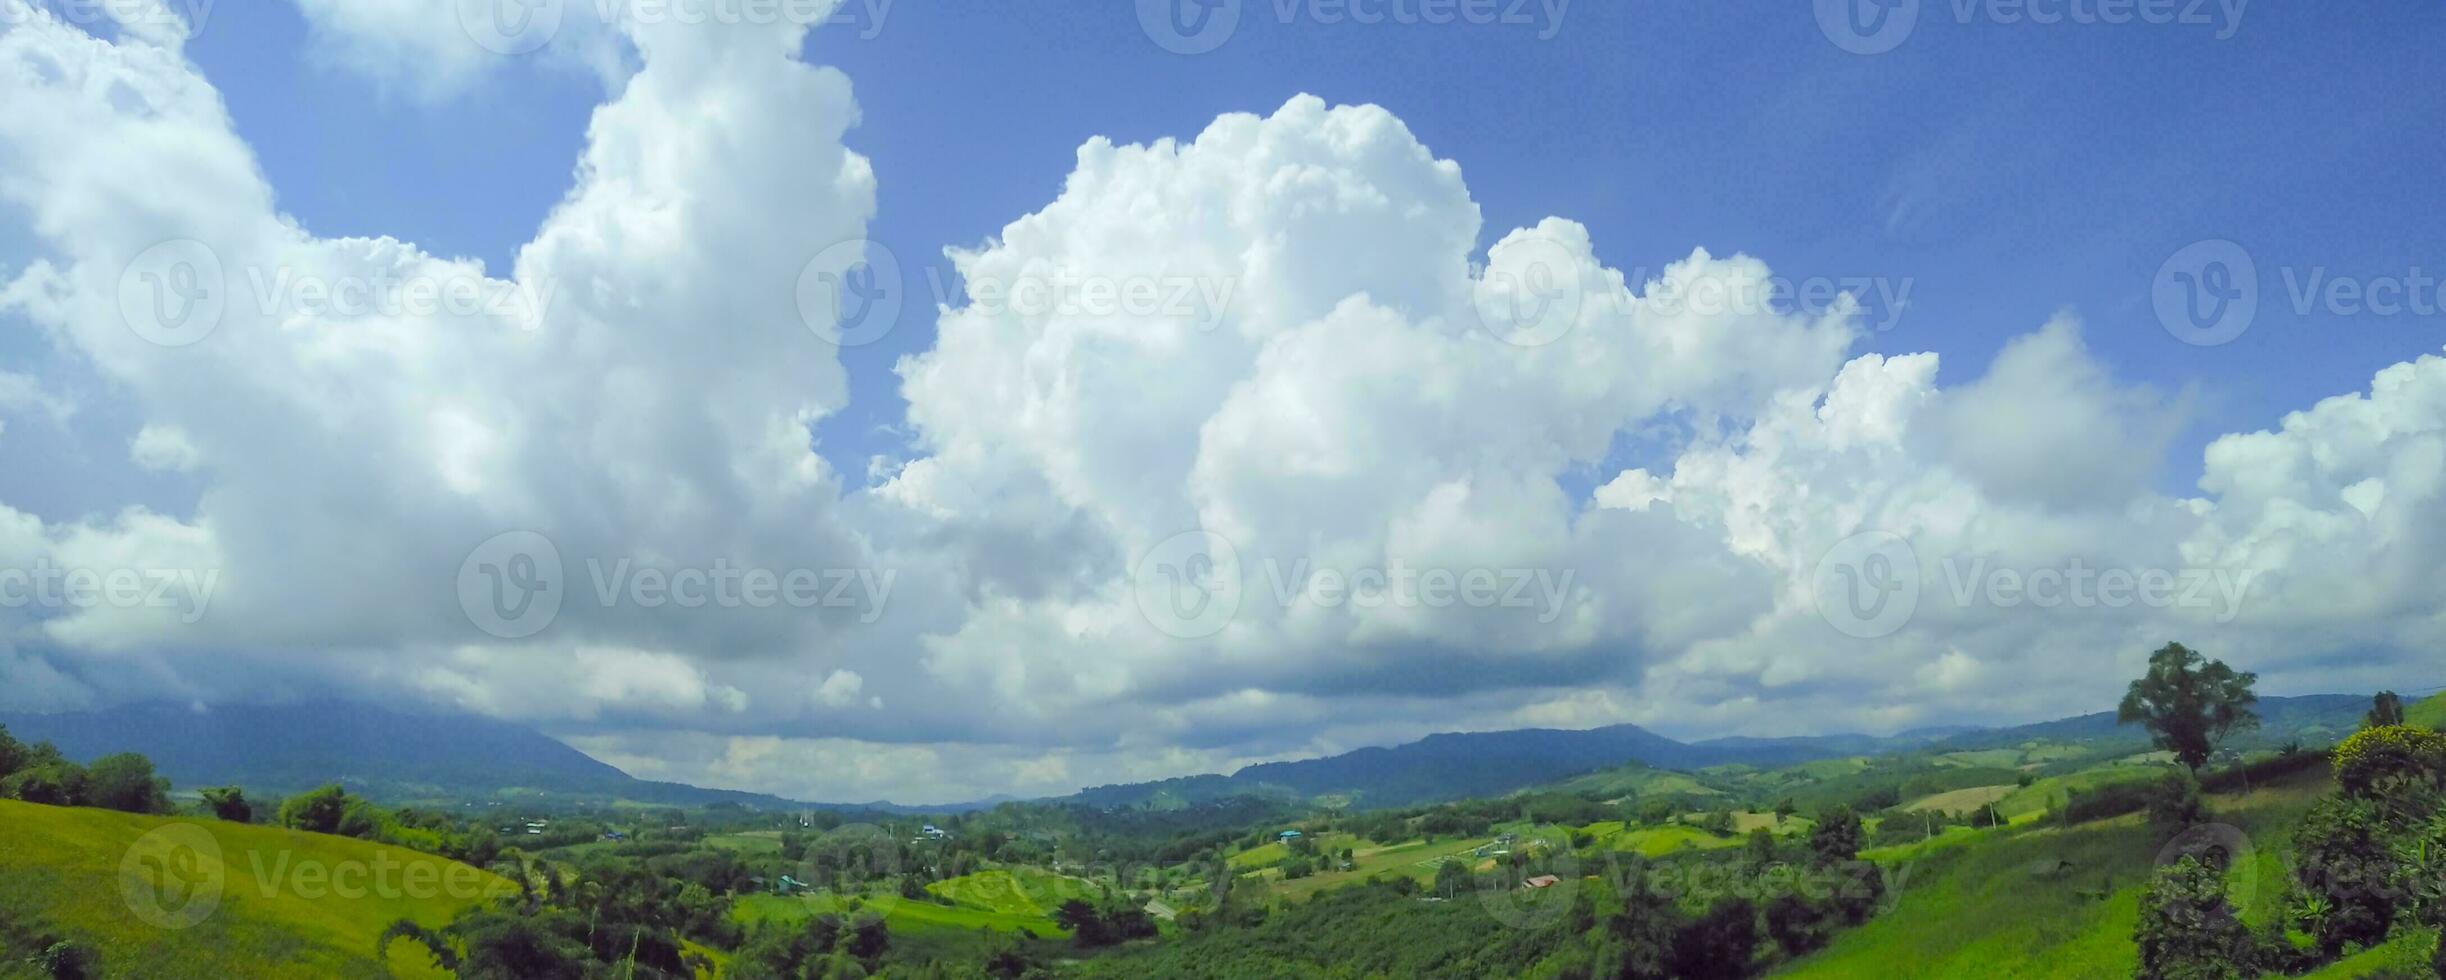 des nuages dans le ciel et vert arbre montagnes photo